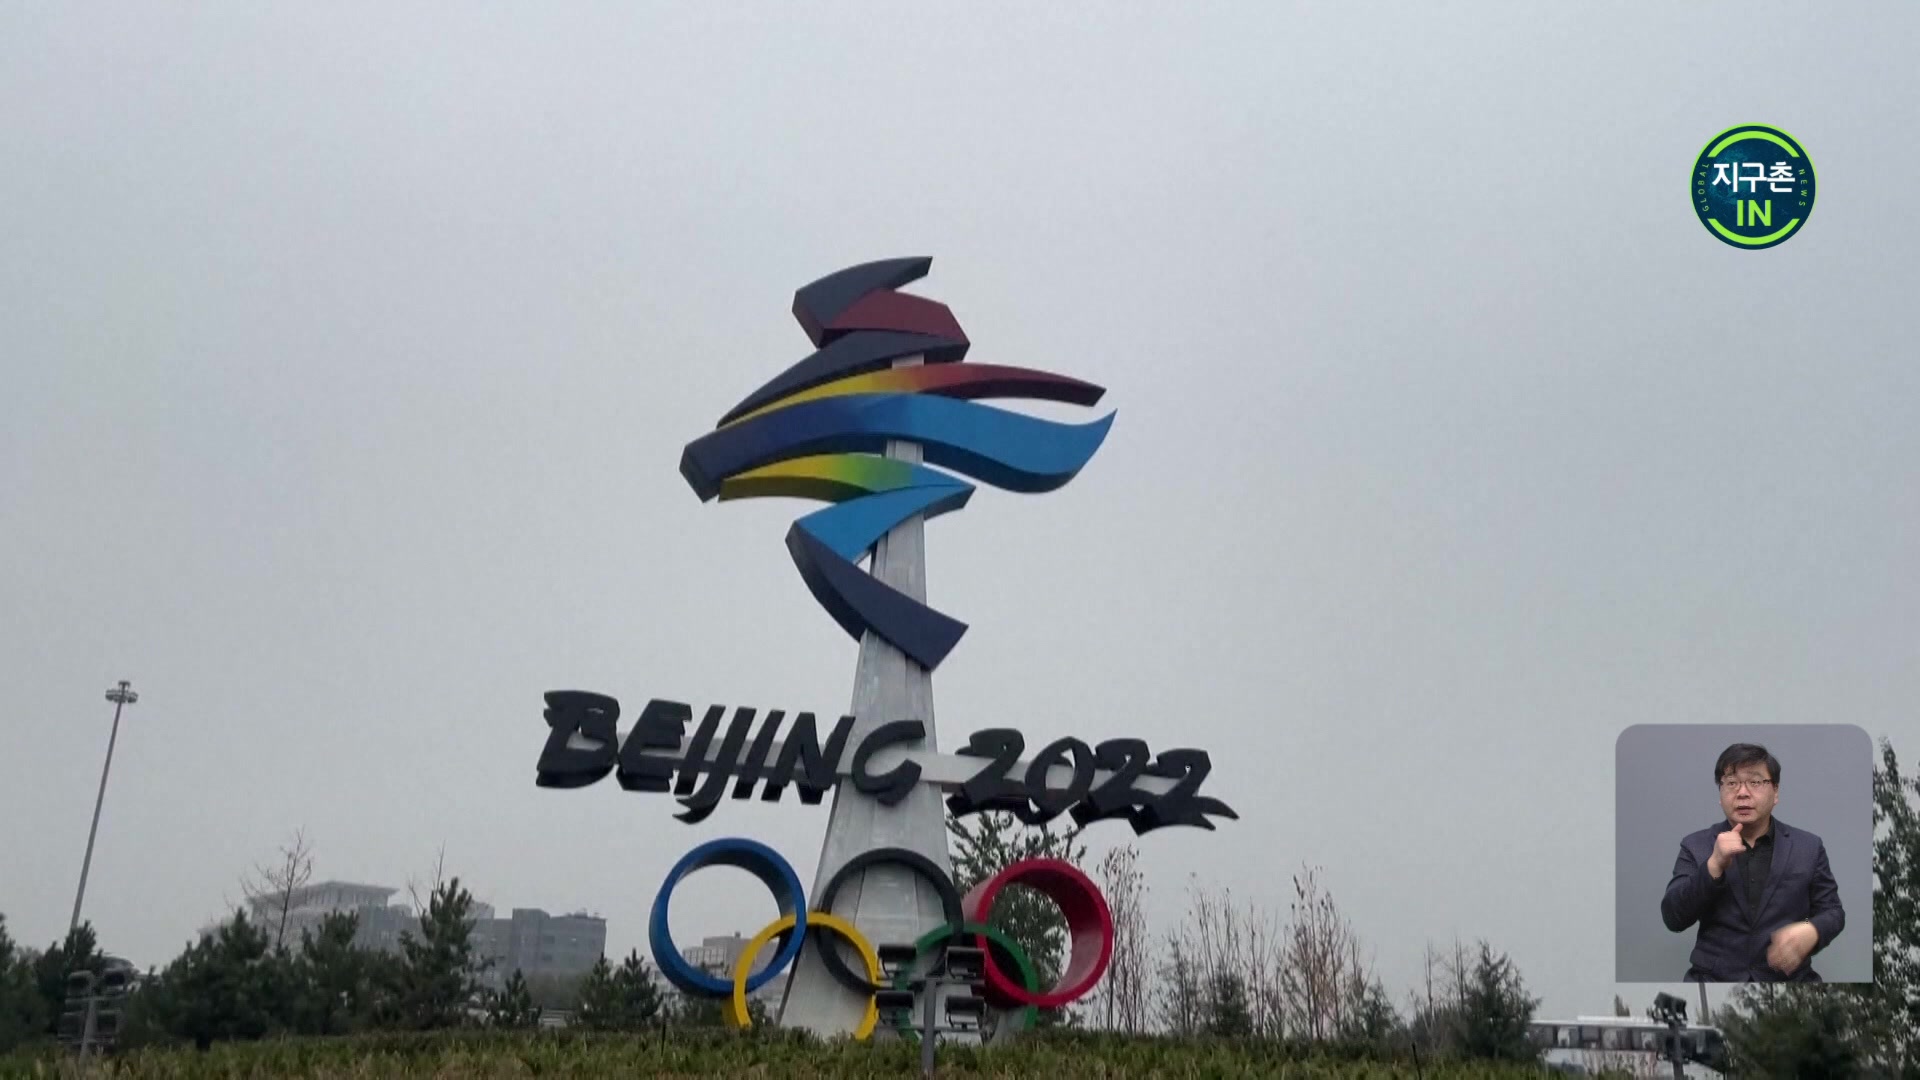 [지구촌 IN] 한 달 앞 동계올림픽…현지 분위기는?